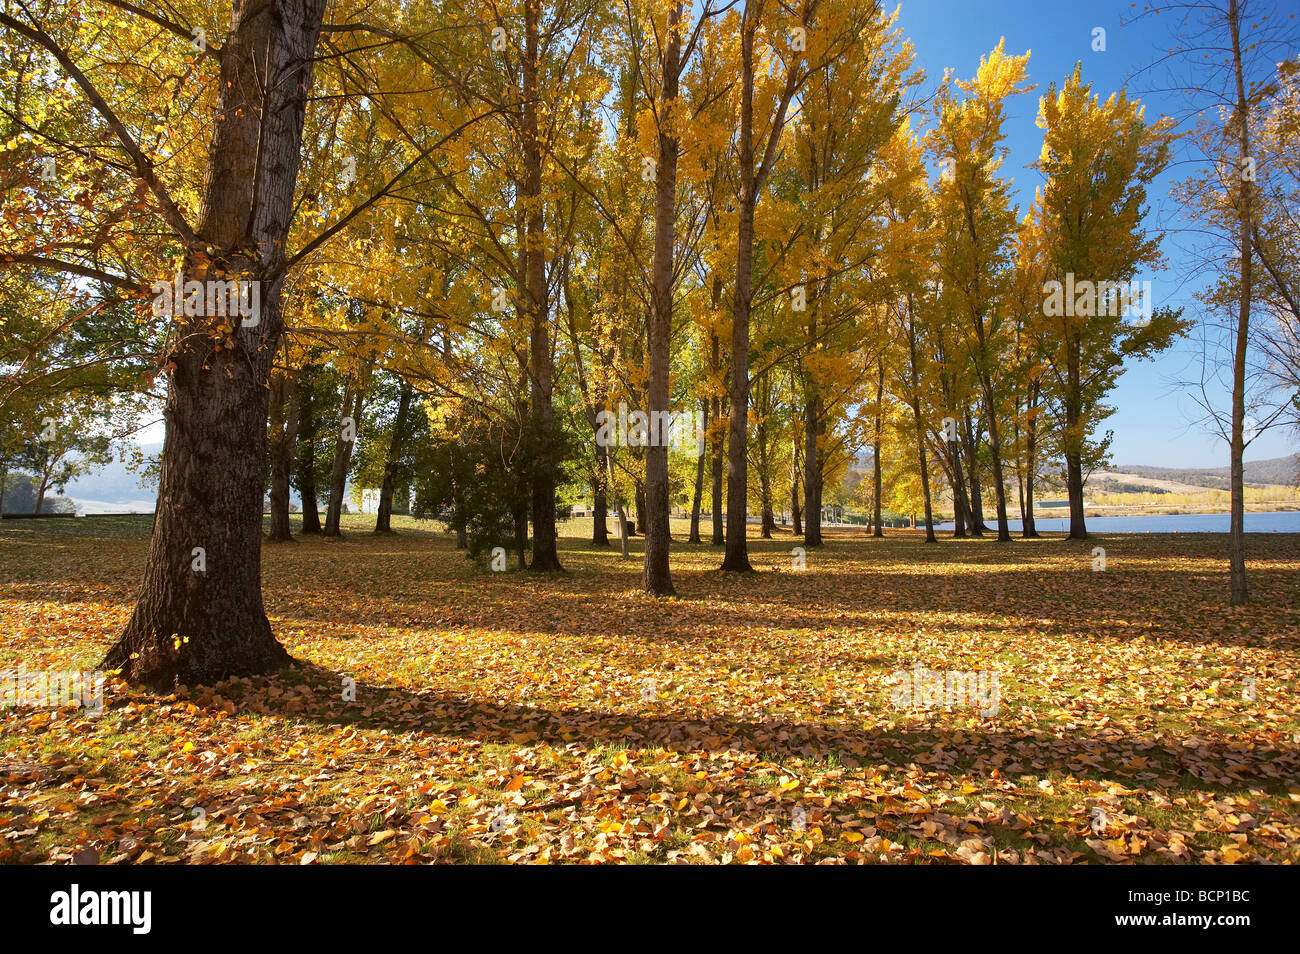 Les arbres d'automne à rampe de mise à l'aire de pique-nique par Khancoban Pondage montagnes enneigées du sud de la Nouvelle-Galles du Sud Australie Banque D'Images